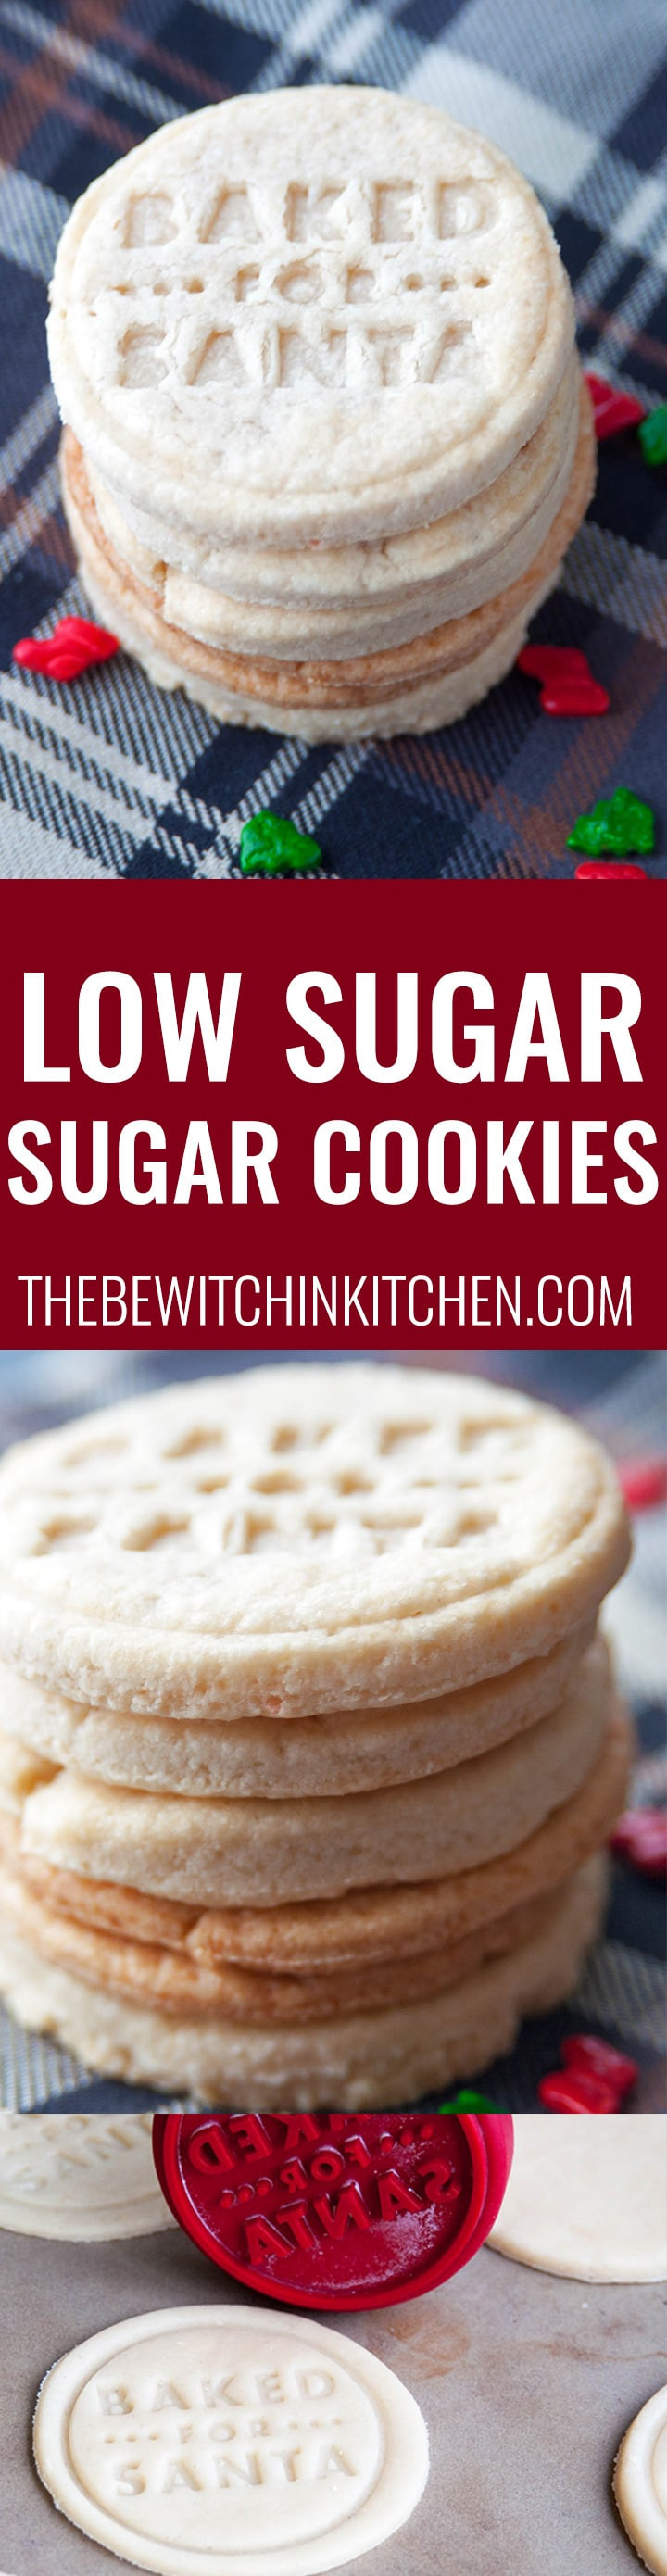 Low Sugar Christmas Cookies
 Low Sugar Cookies Recipe